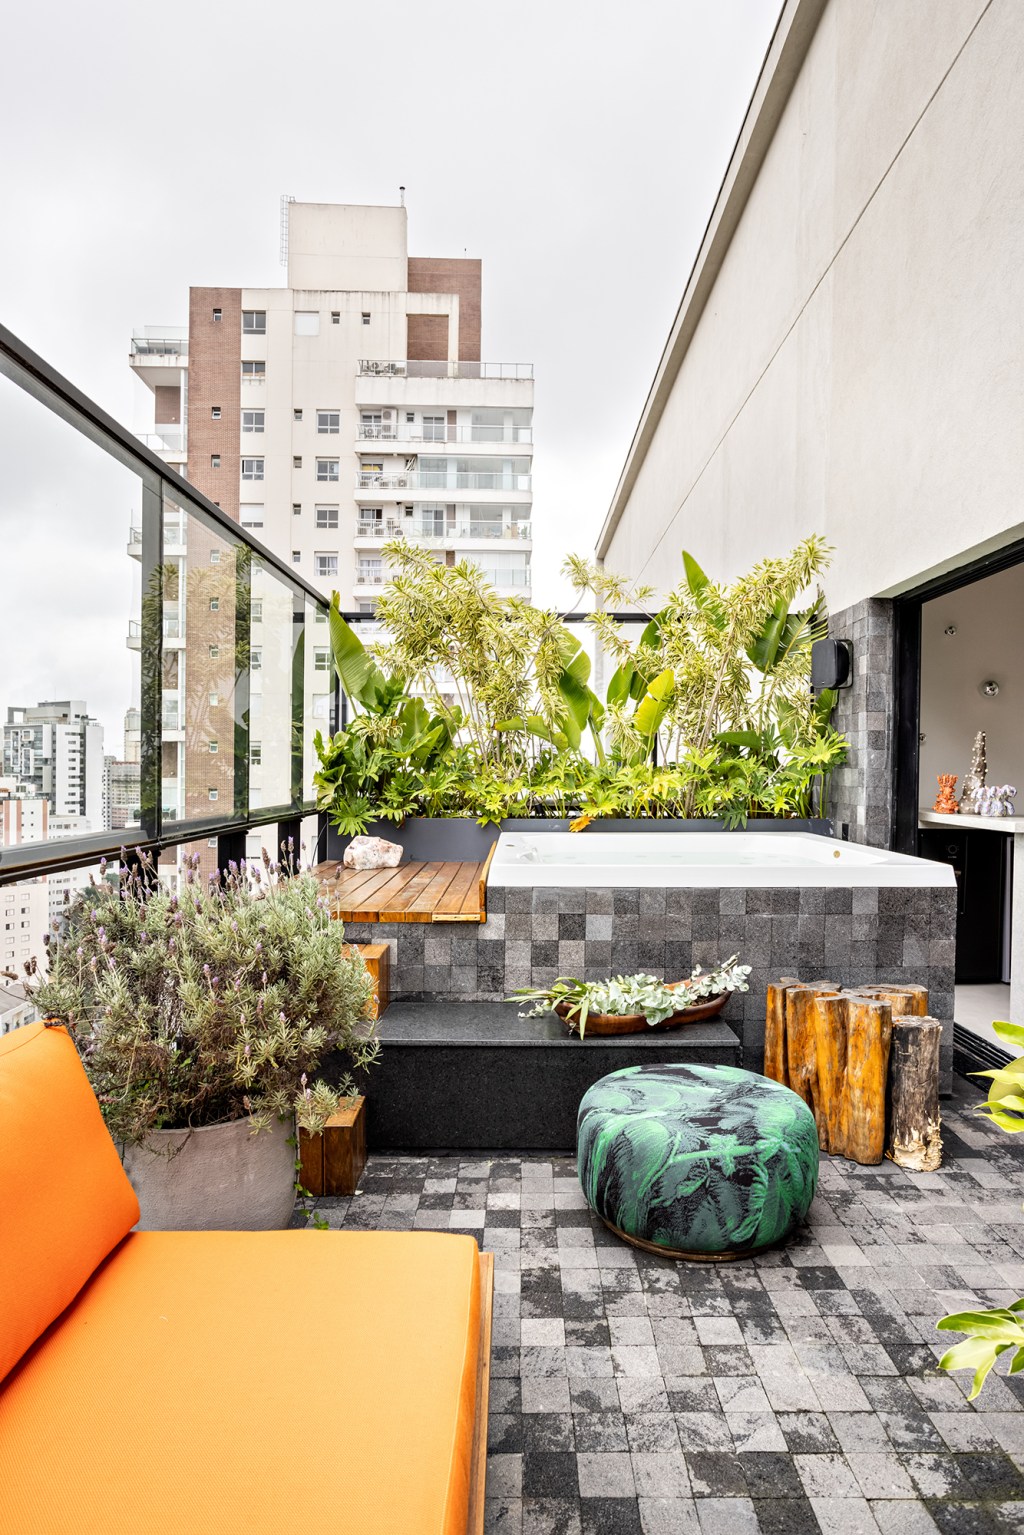 Pedro Luiz de Marqui varanda jardim jacuzzi sofa apartamento